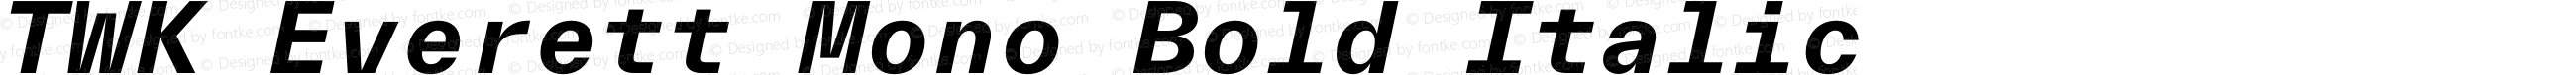 TWK Everett Mono Bold Italic